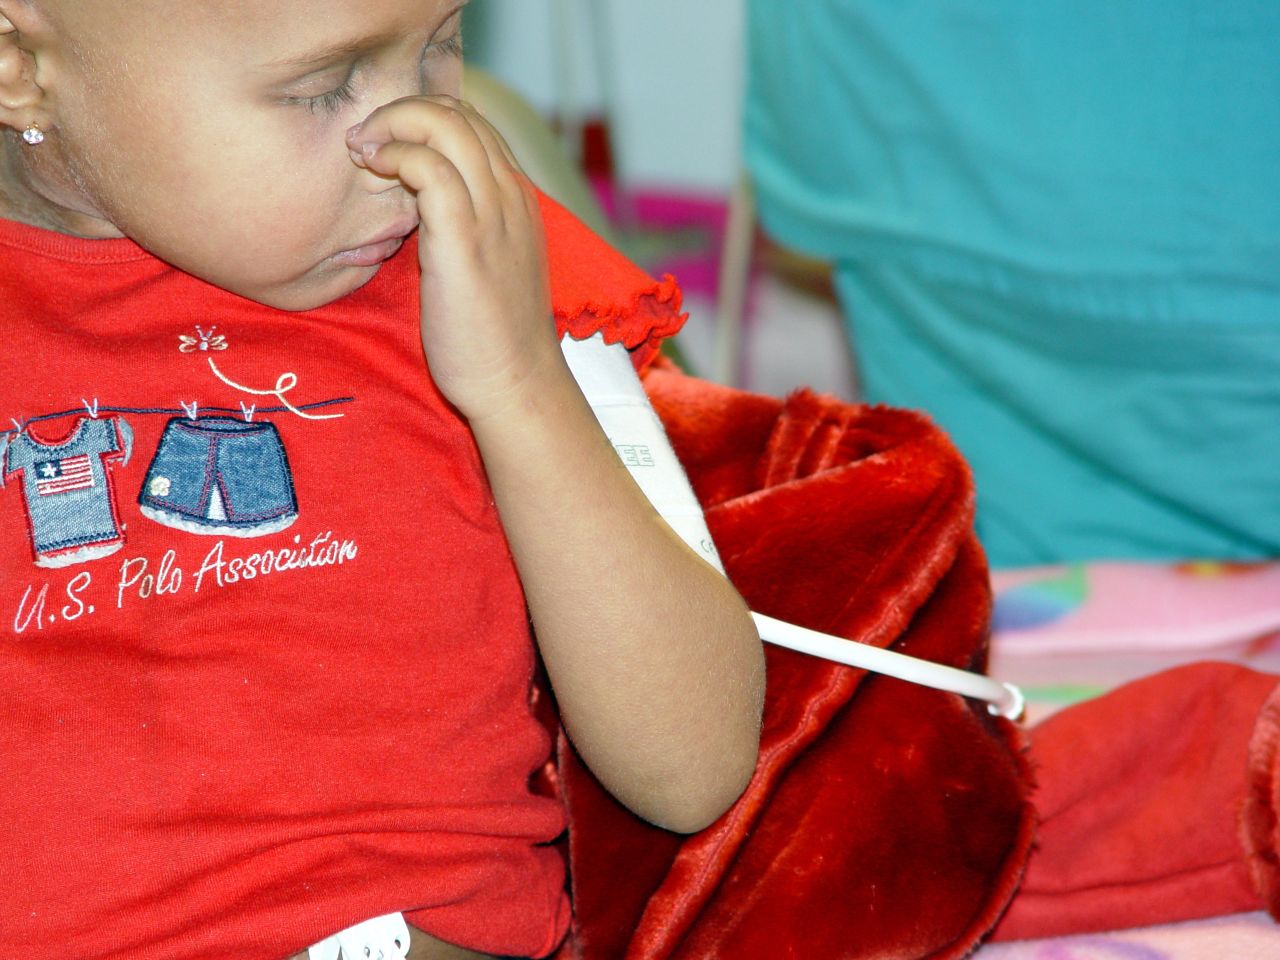 Γερμανική κλινική προσφέρει την τελευταία ελπίδα σε 4χρονο κοριτσάκι να νικήσει τον καρκίνο!